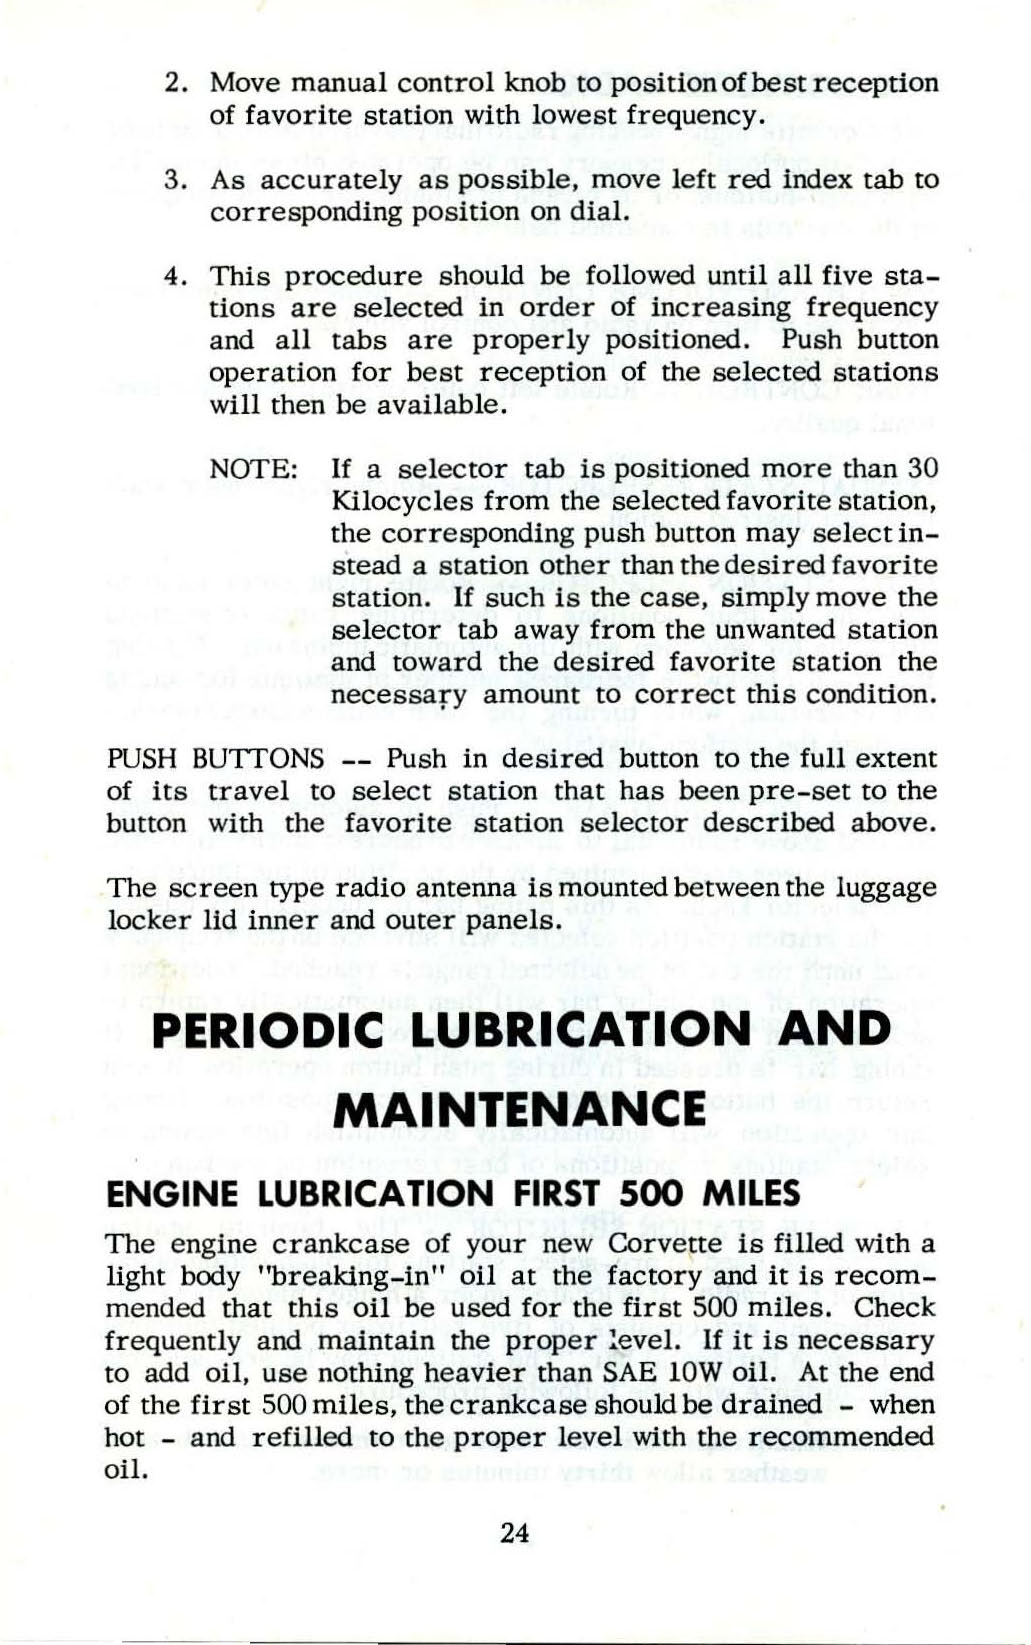 1953_Corvette_Owners_Manual-24